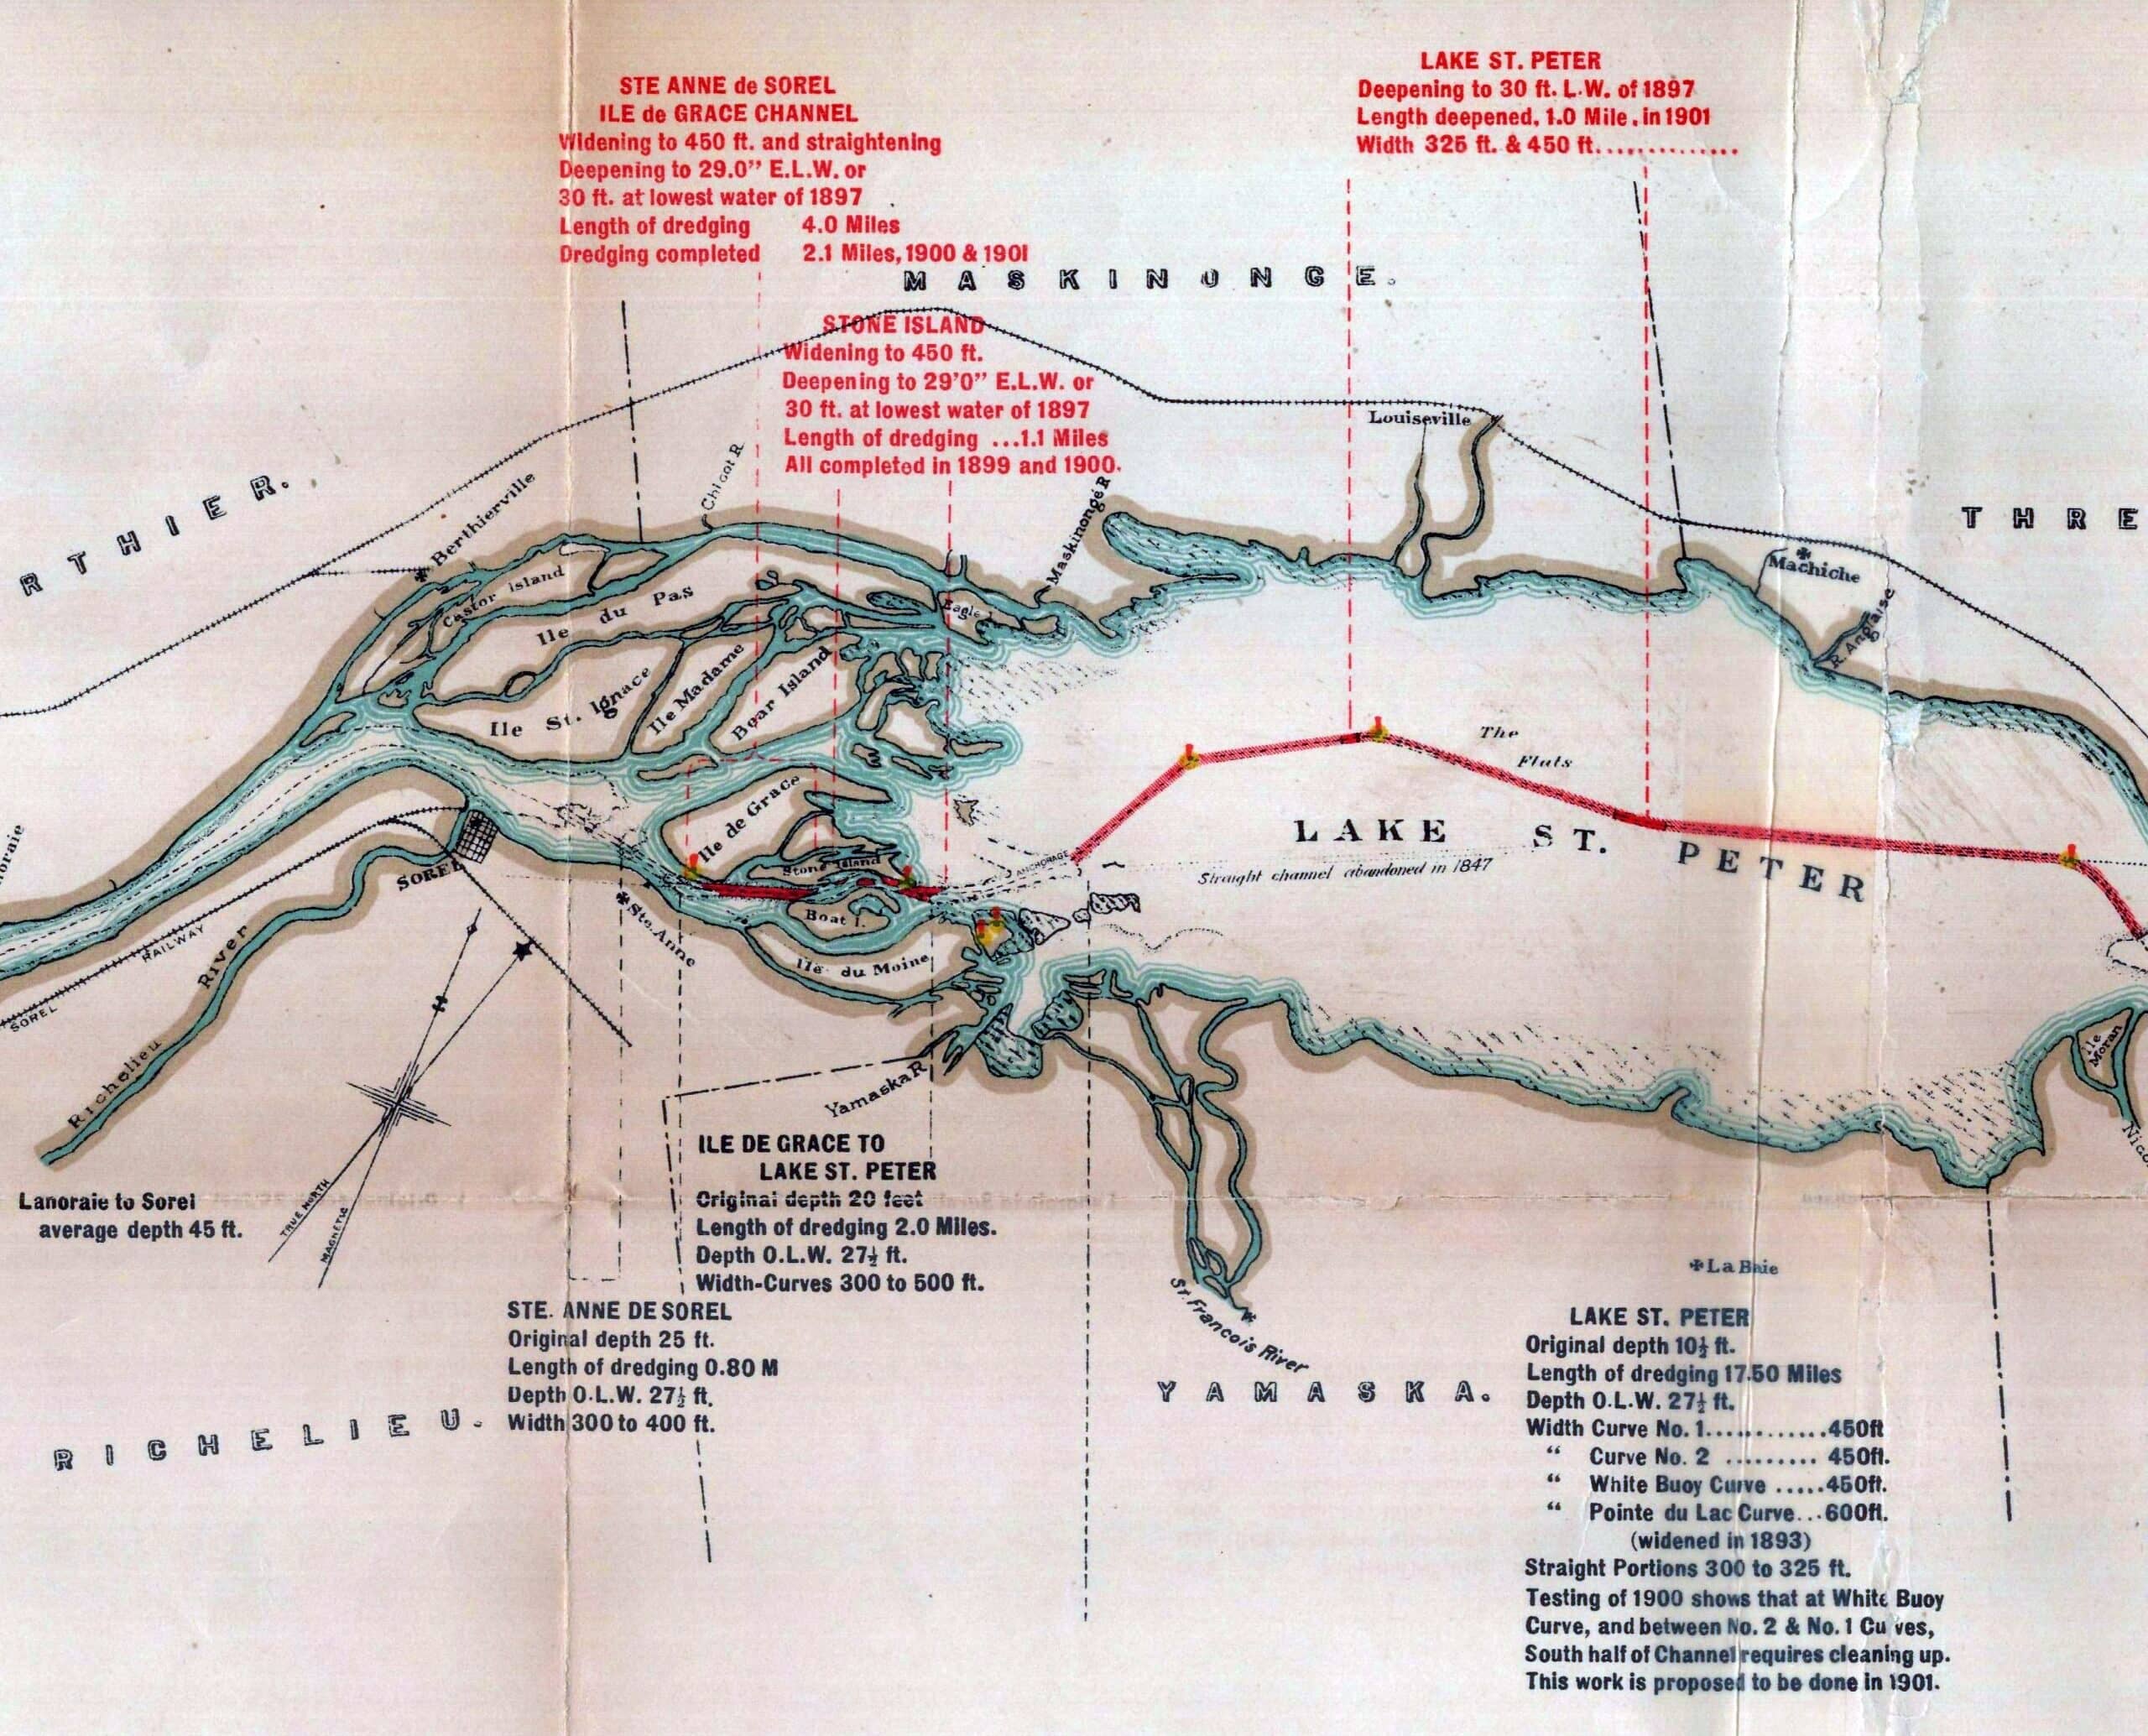 Section de la carte précédente montrant l’archipel du lac Saint-Pierre en 1901